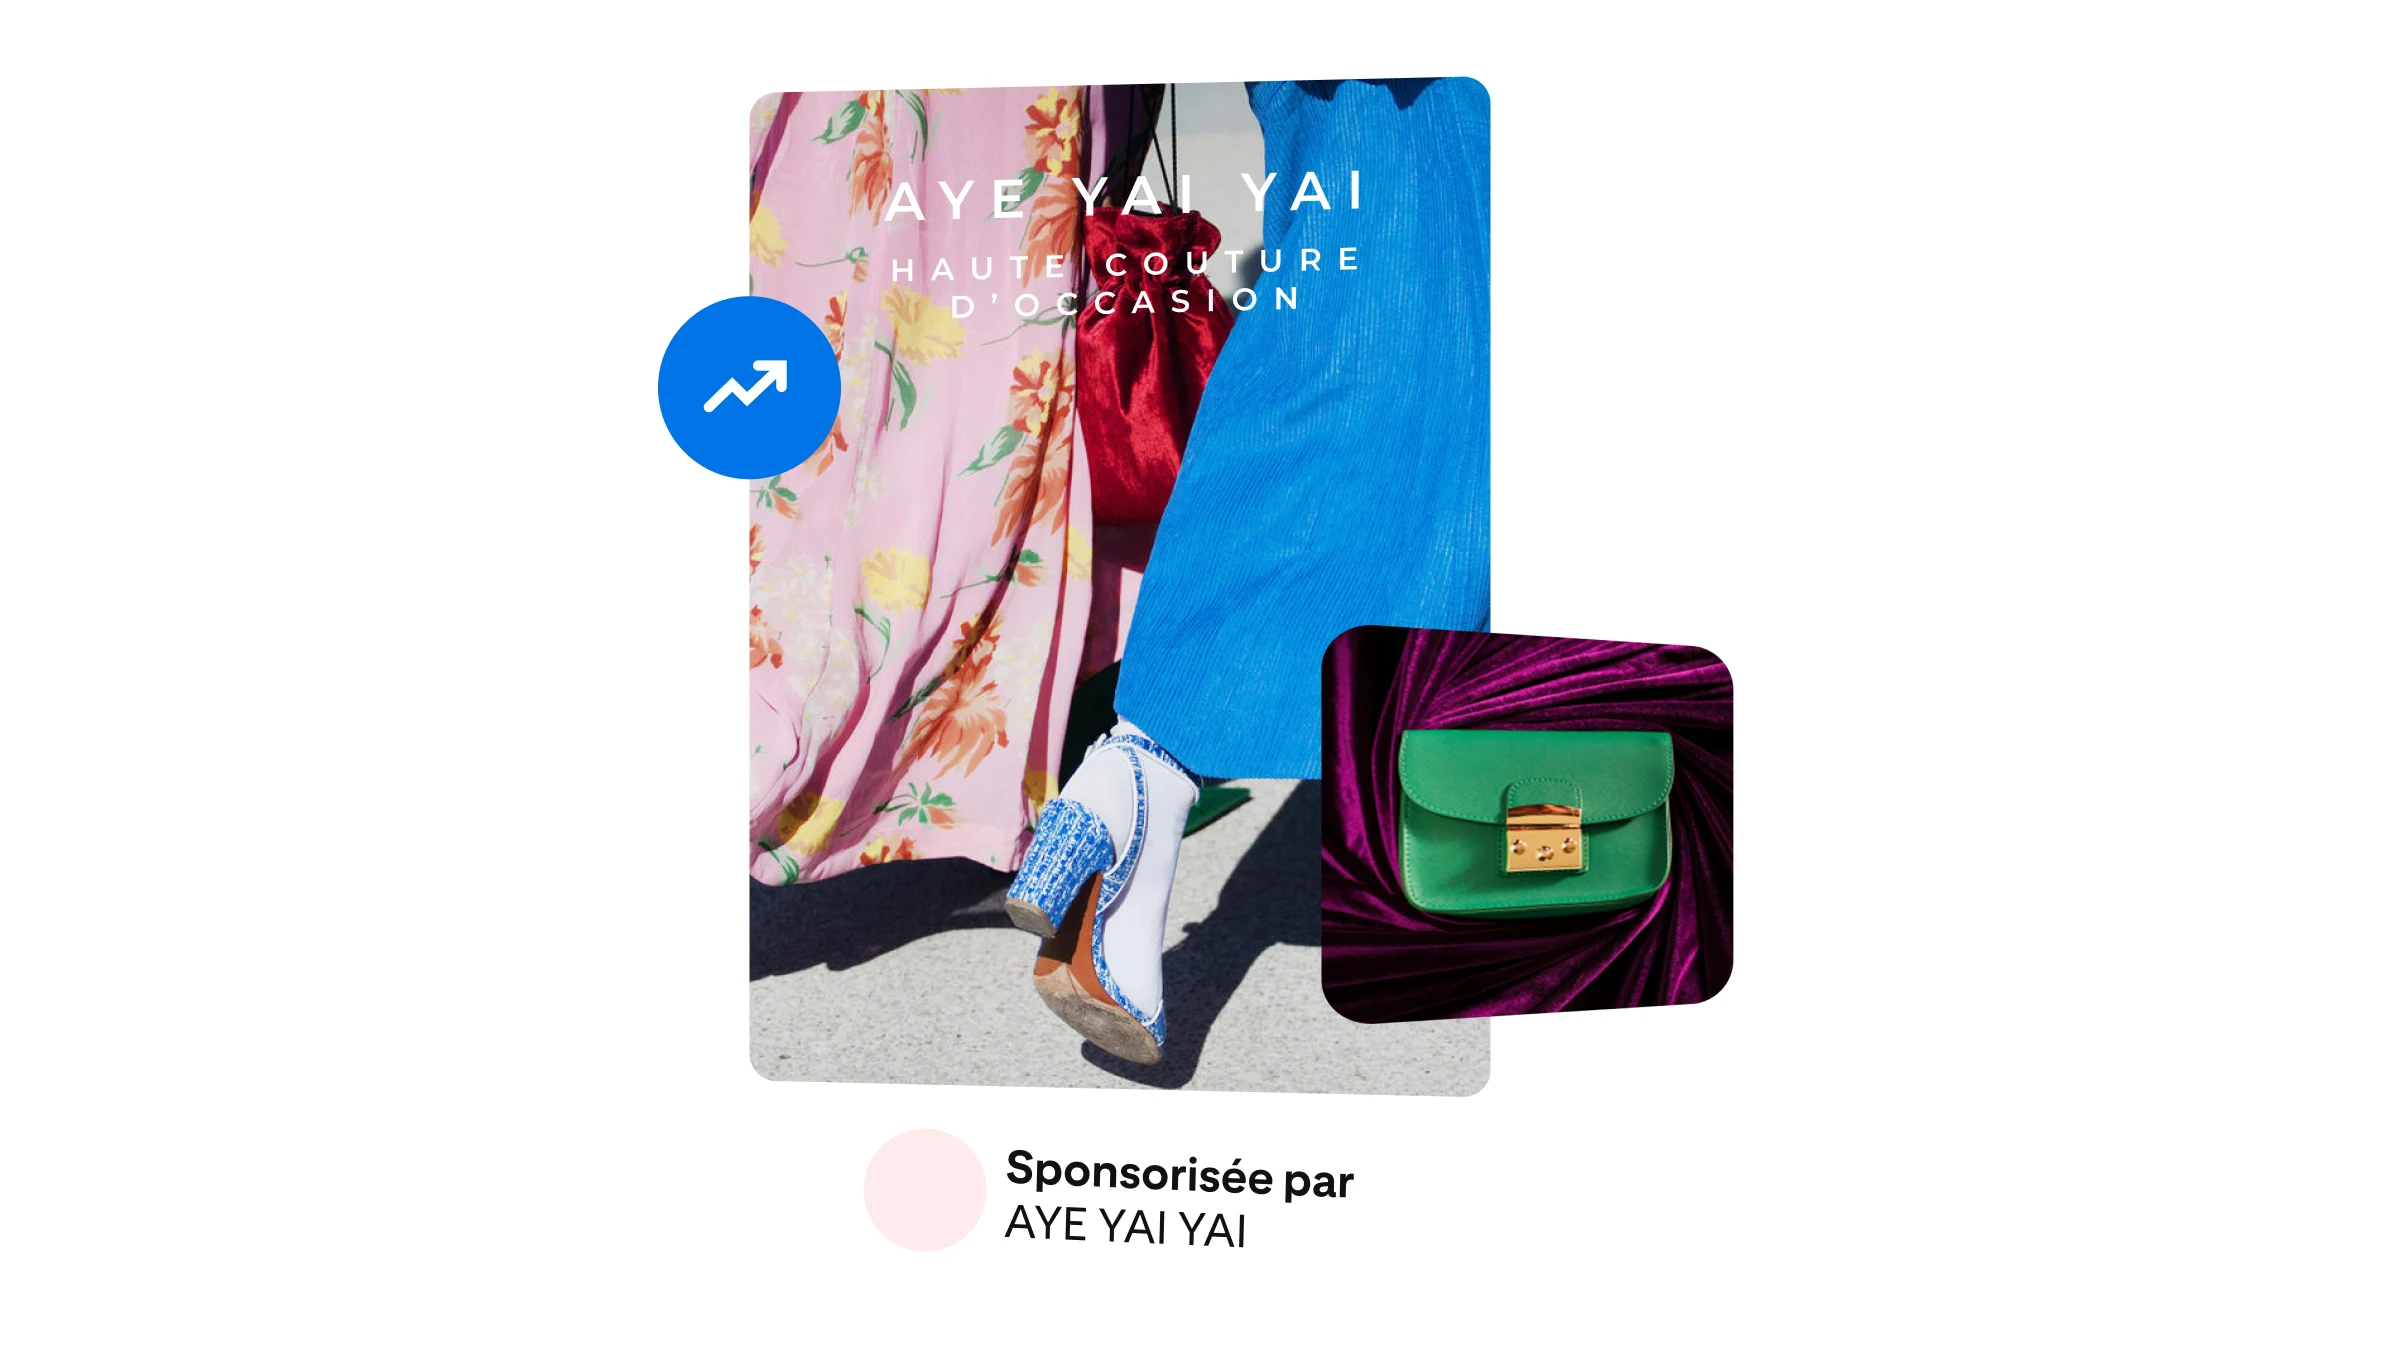 Une annonce mode de la marque Aye Yai Yai montrant un sac à main vert.